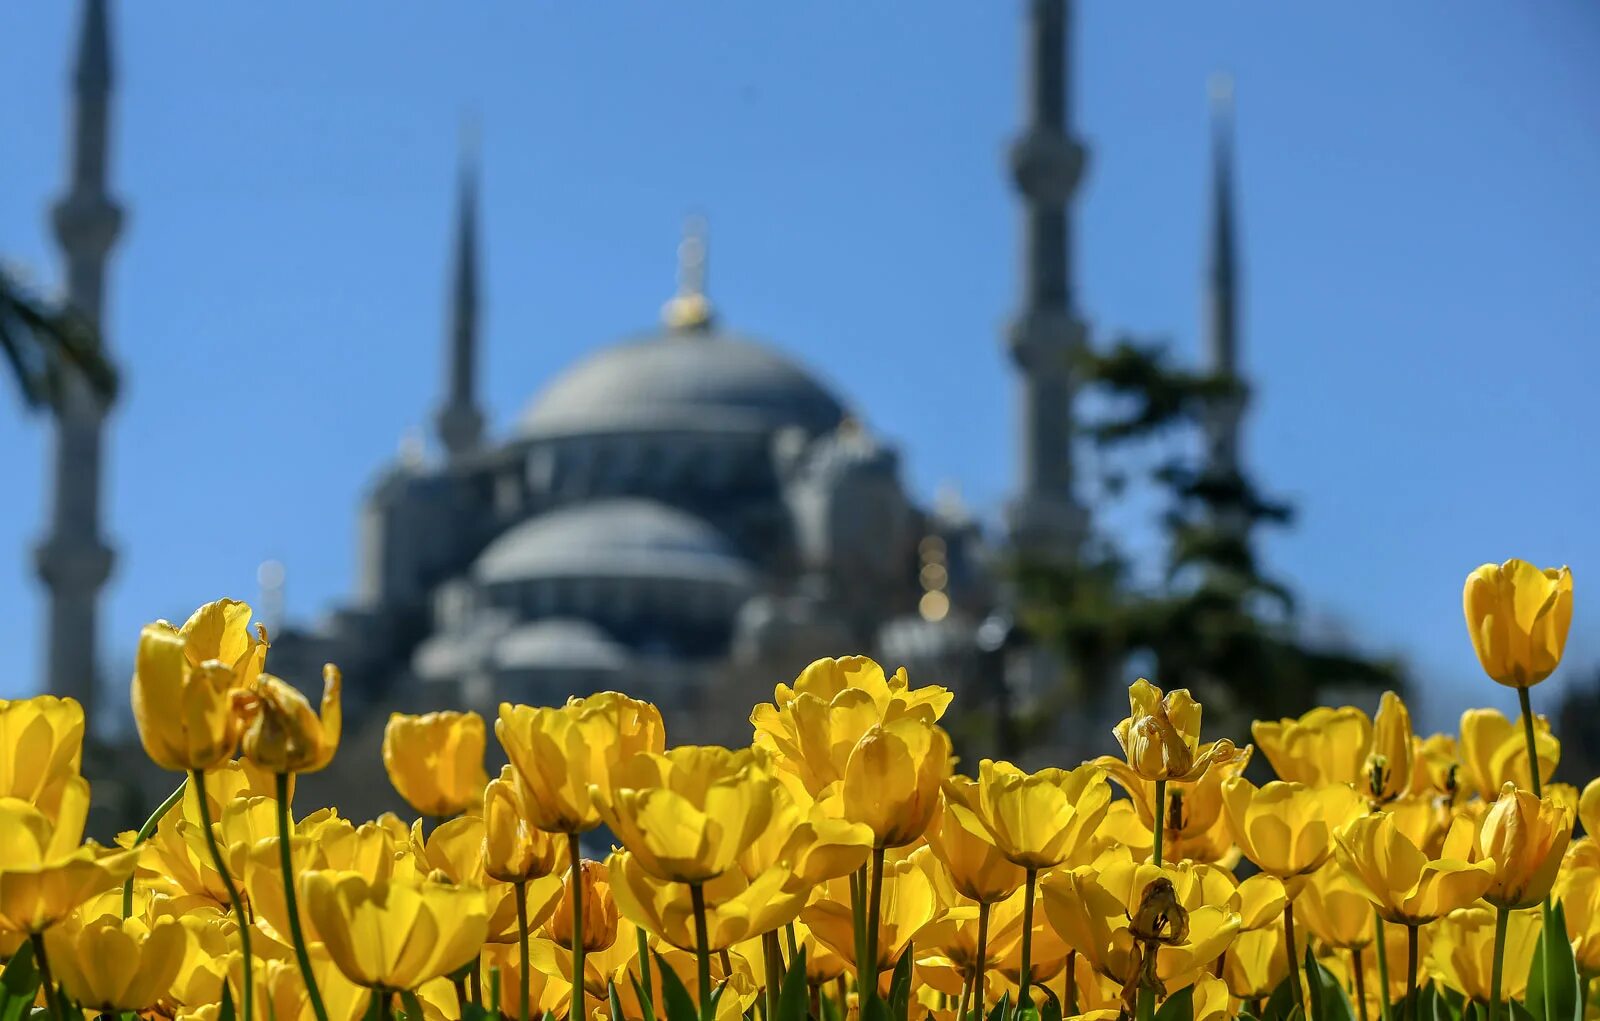 Султанахмет Стамбул тюльпаны. Голубая мечеть в Стамбуле тюльпаны. Тюльпаны в Турции Османская Империя. Стамбул весной